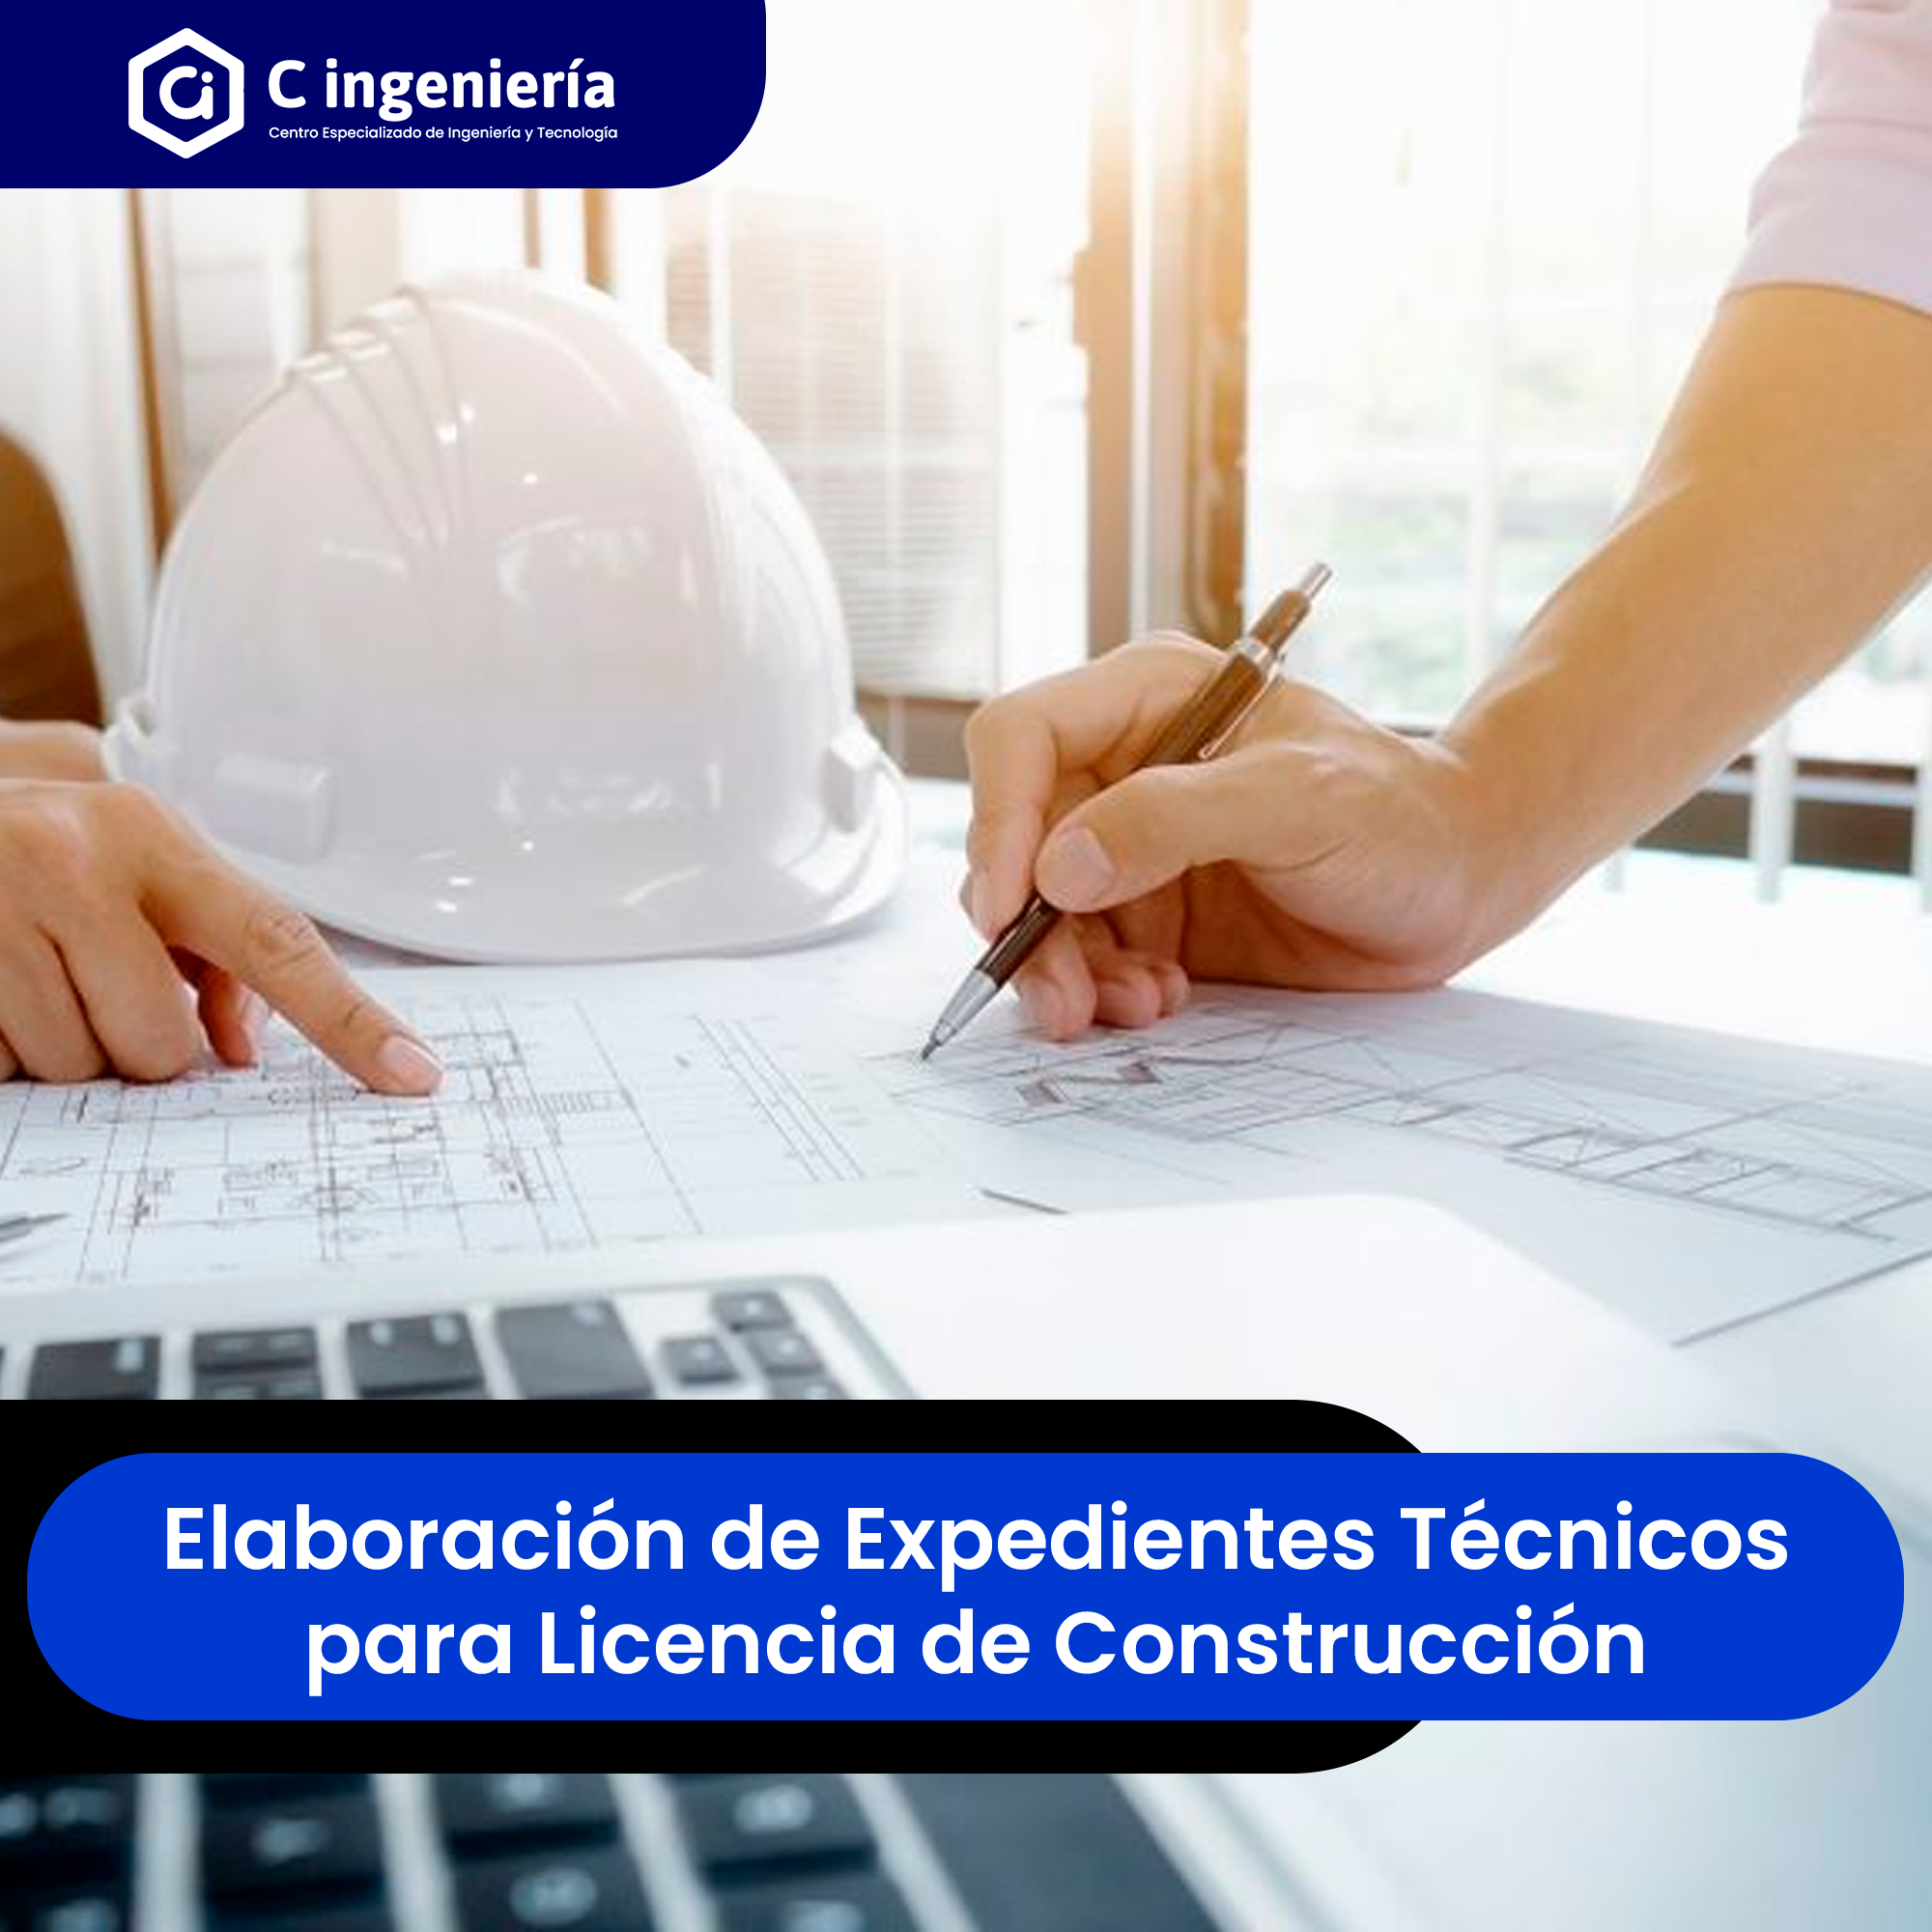 Expedientes Técnicos para Licencia de Construcción